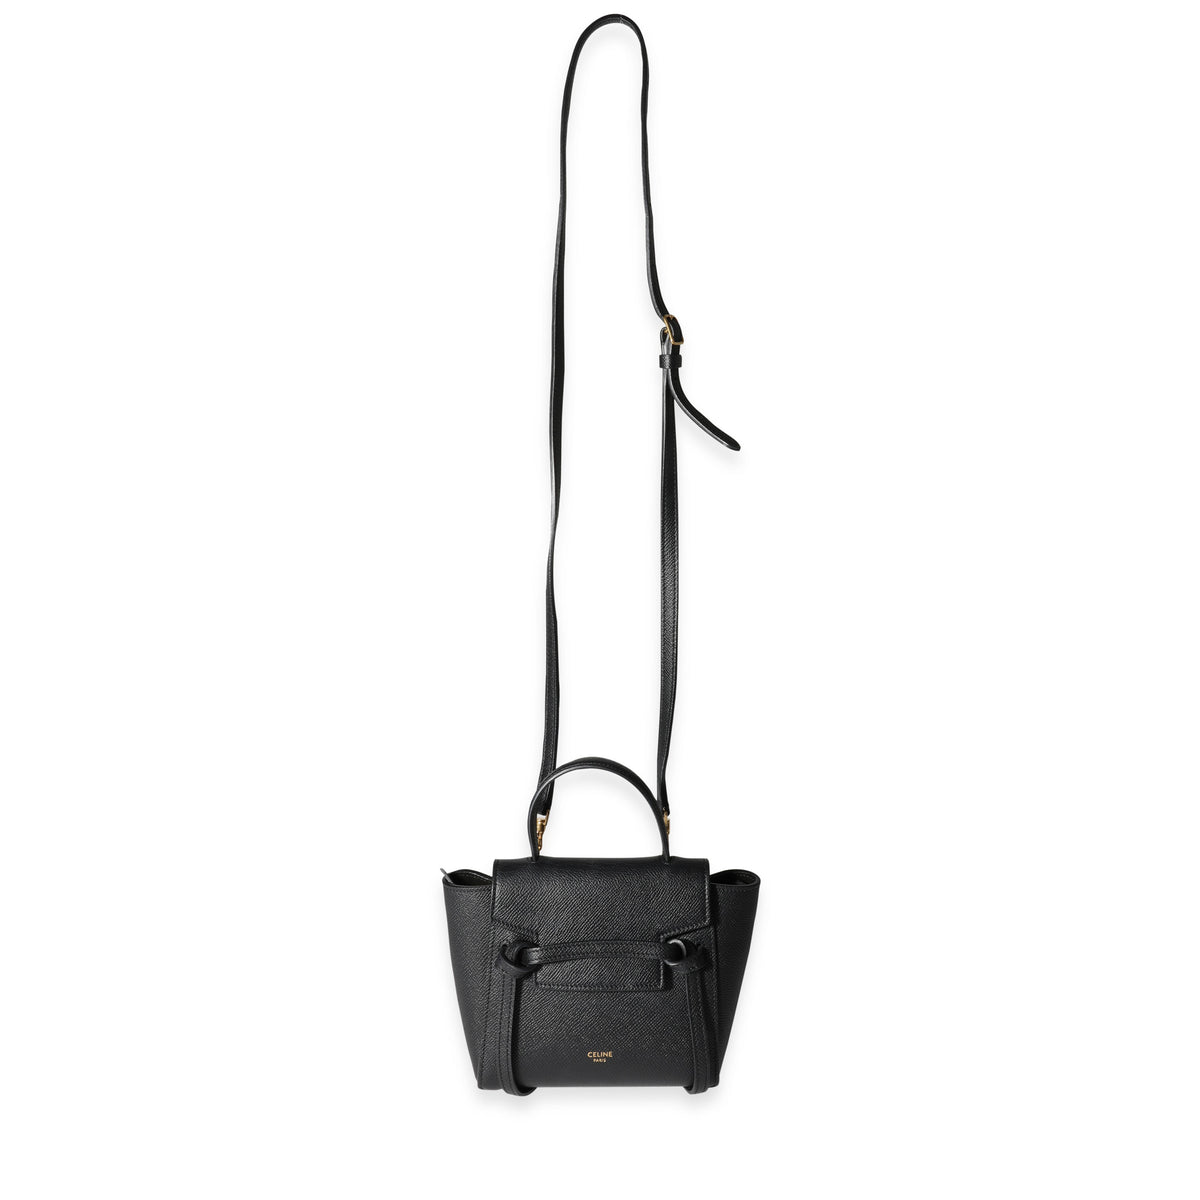 Should You Buy? Celine Calfskin Leather Pico Belt Bag 